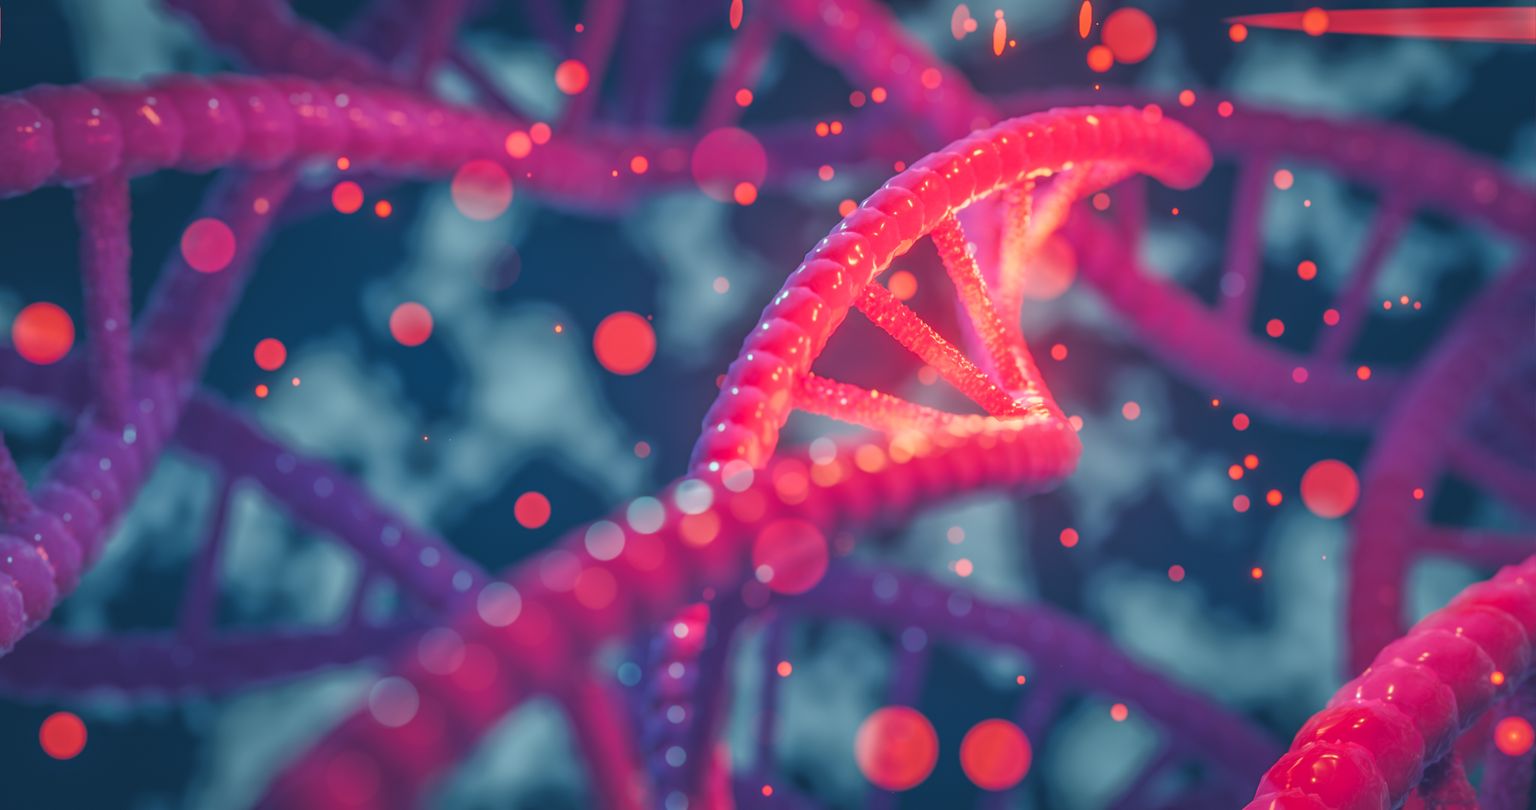 Hélice d'ADN gènes colorés chromosomes séquence d'ADN, structure d'ADN avec lueur. Concept scientifique, illustration de fond 3d